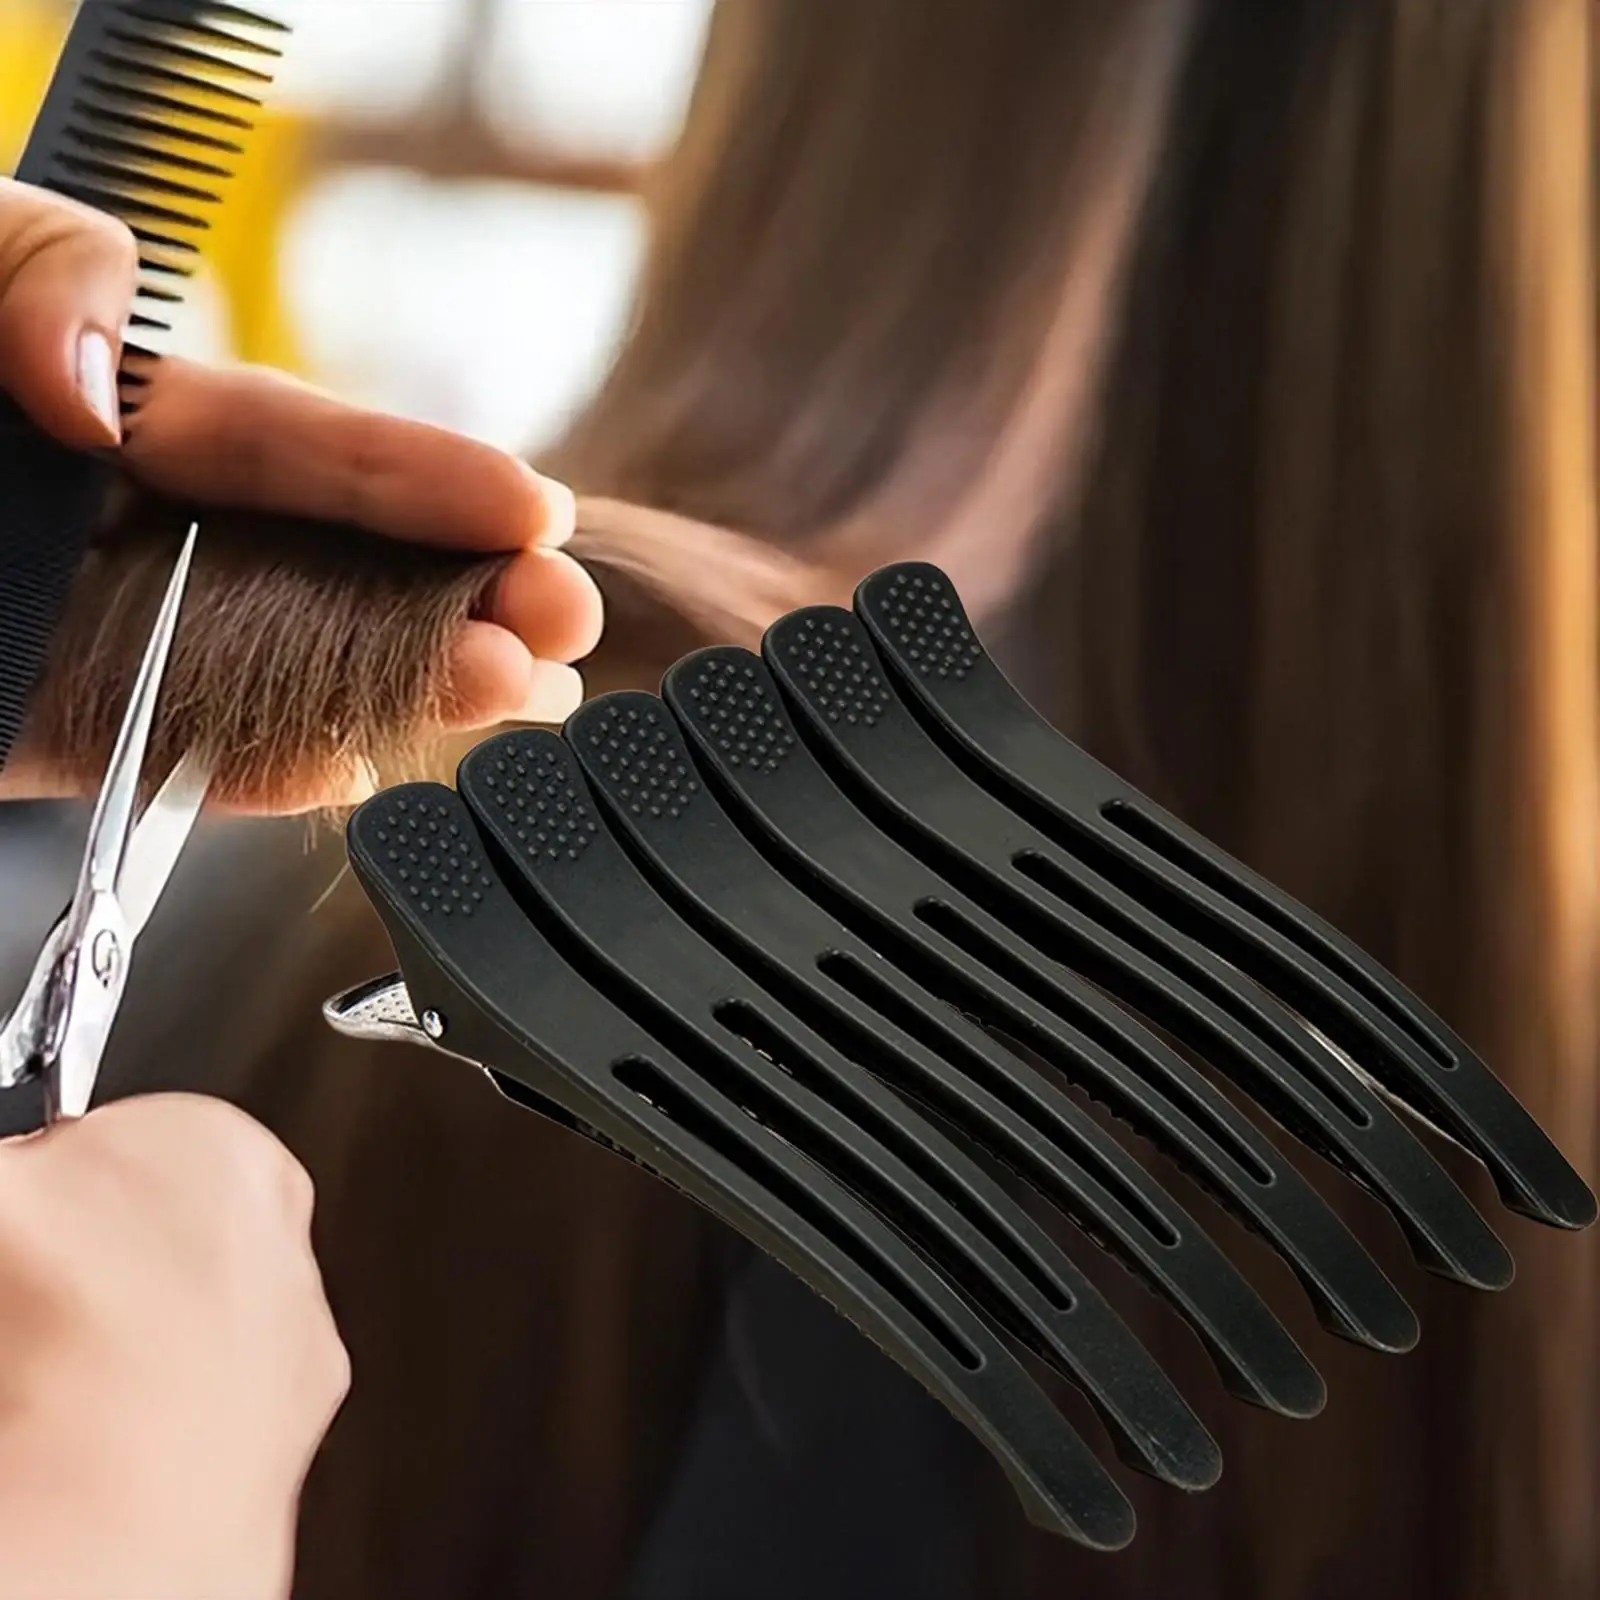 6Pcs Salon Hair Sectioning Clips Duck Billed Hair Clips for Hair Drying Salon Home Styling Sectioning Women Men Hairdresser